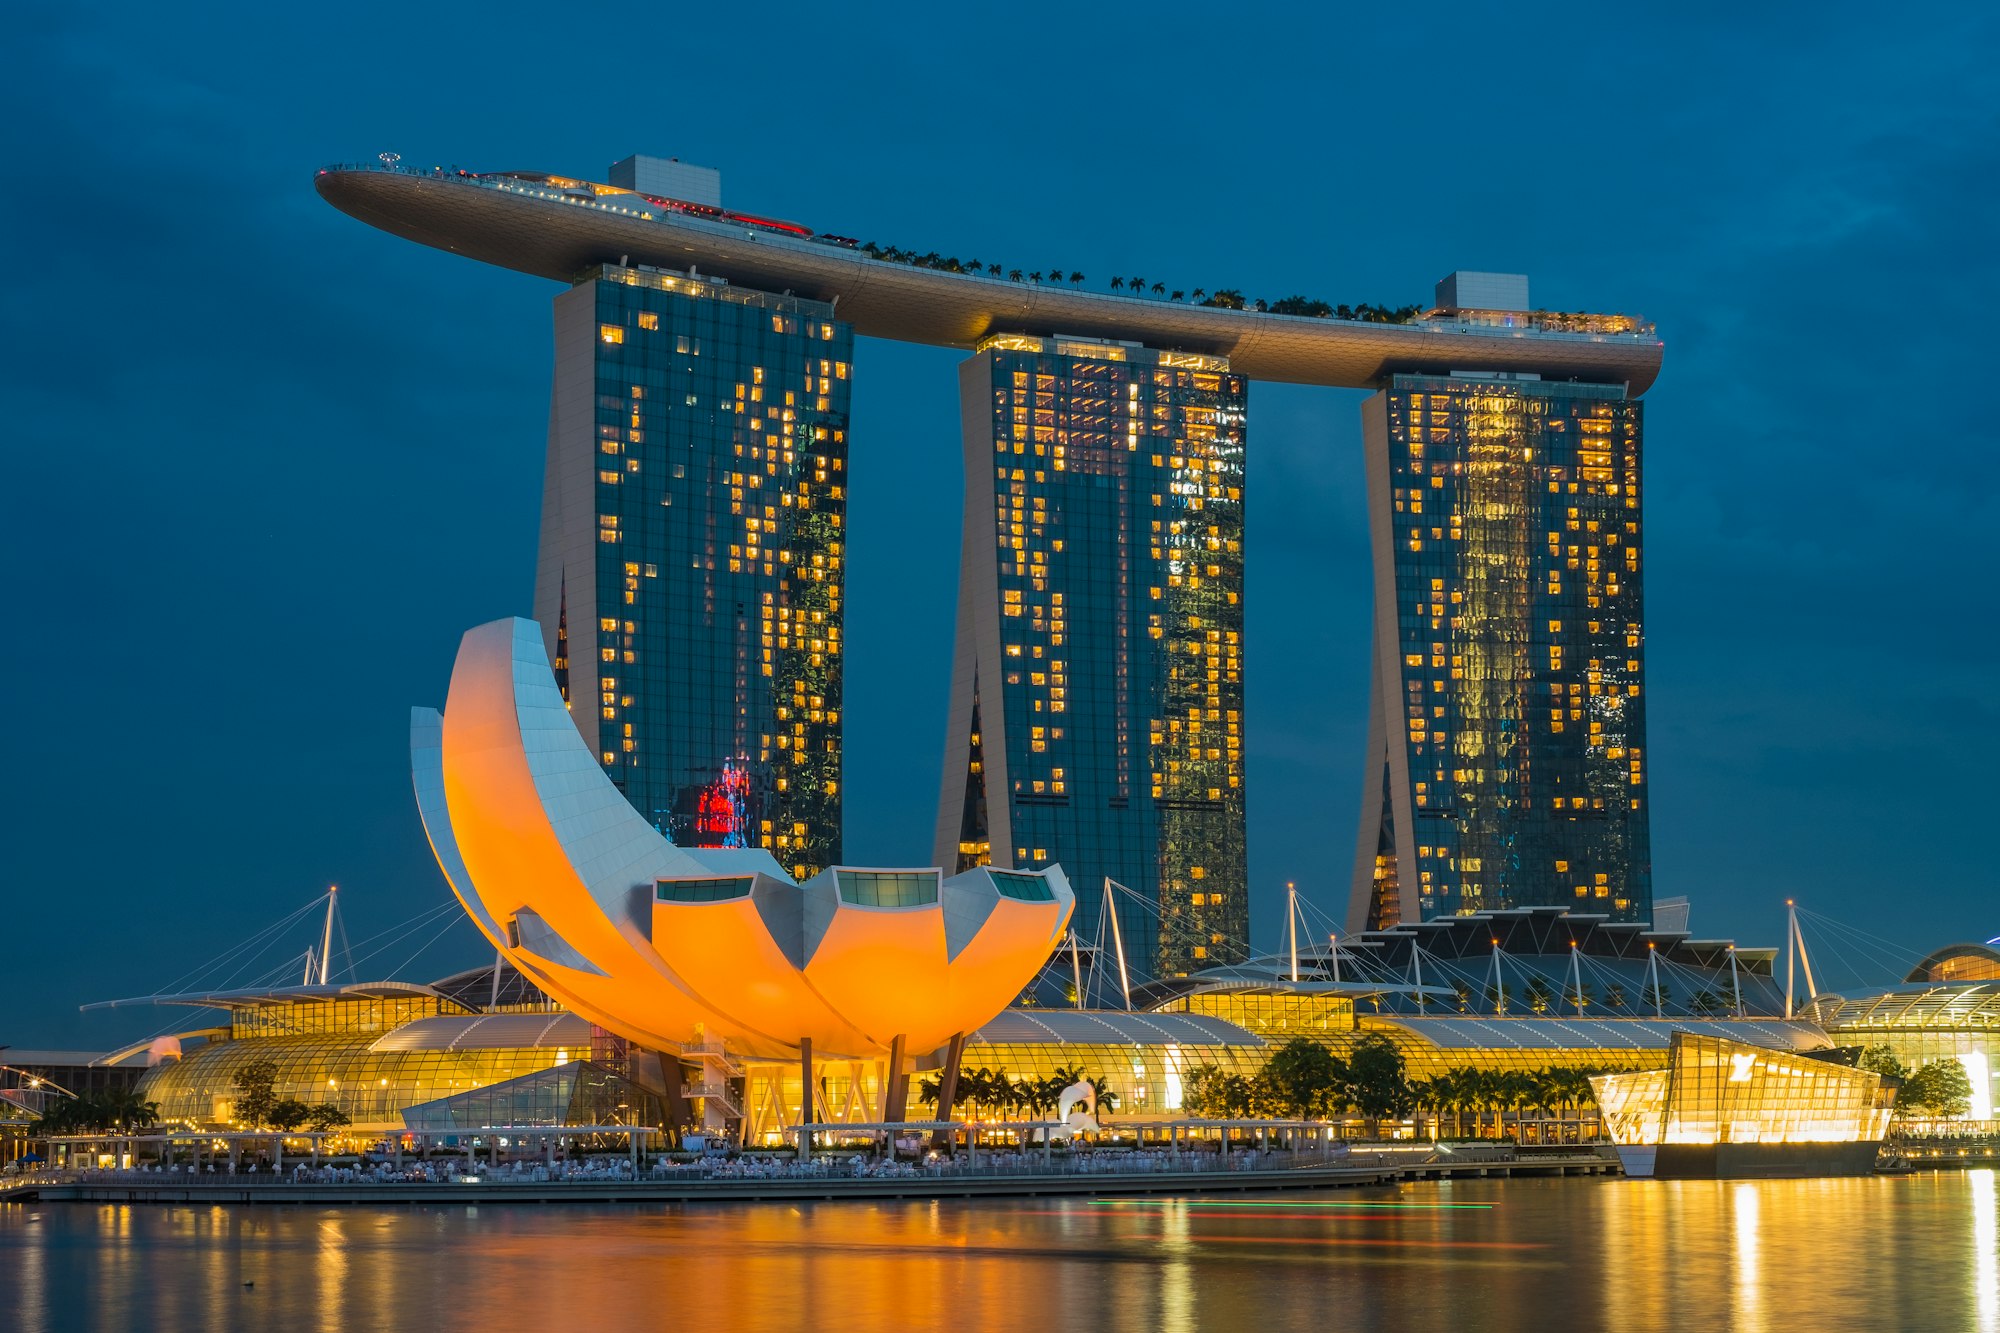 वित्तीय क्षेत्र में विशेषज्ञों की कमी से जूझता सिंगापुर, वैश्विक प्रतिभाओं की है जरूरत